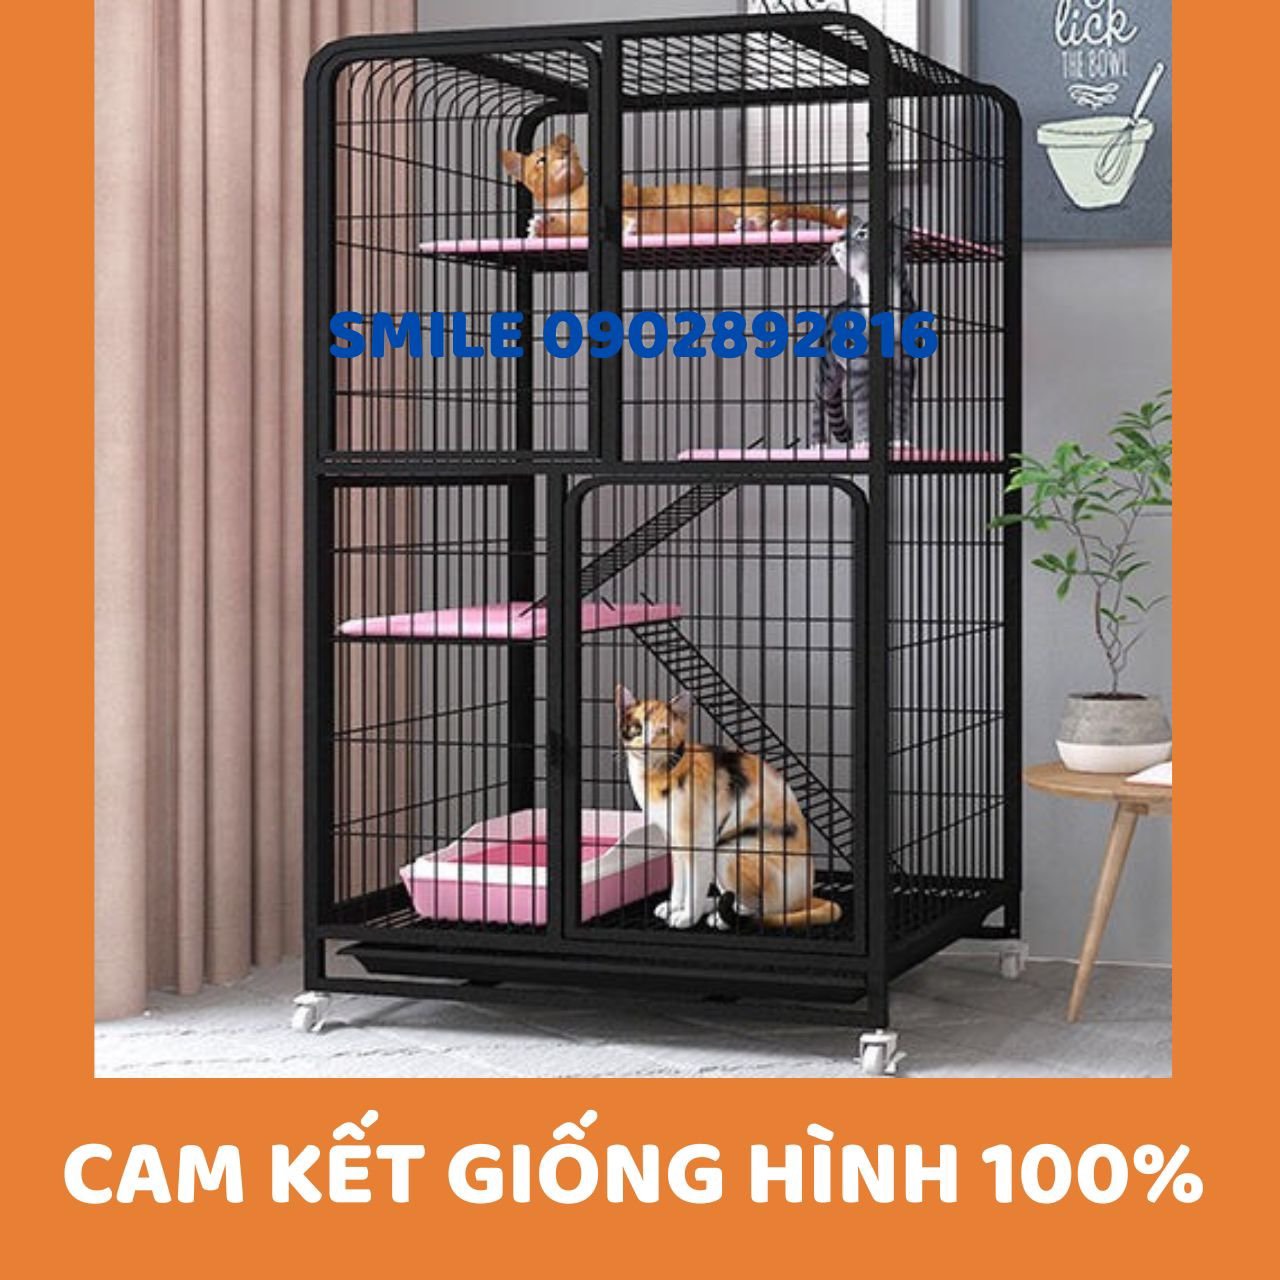 [HÀNG MỚI VỀ] Chuồng Mèo Nan Ống Cao Cấp Loại Xịn Xò- Cam kết giống hình 100%